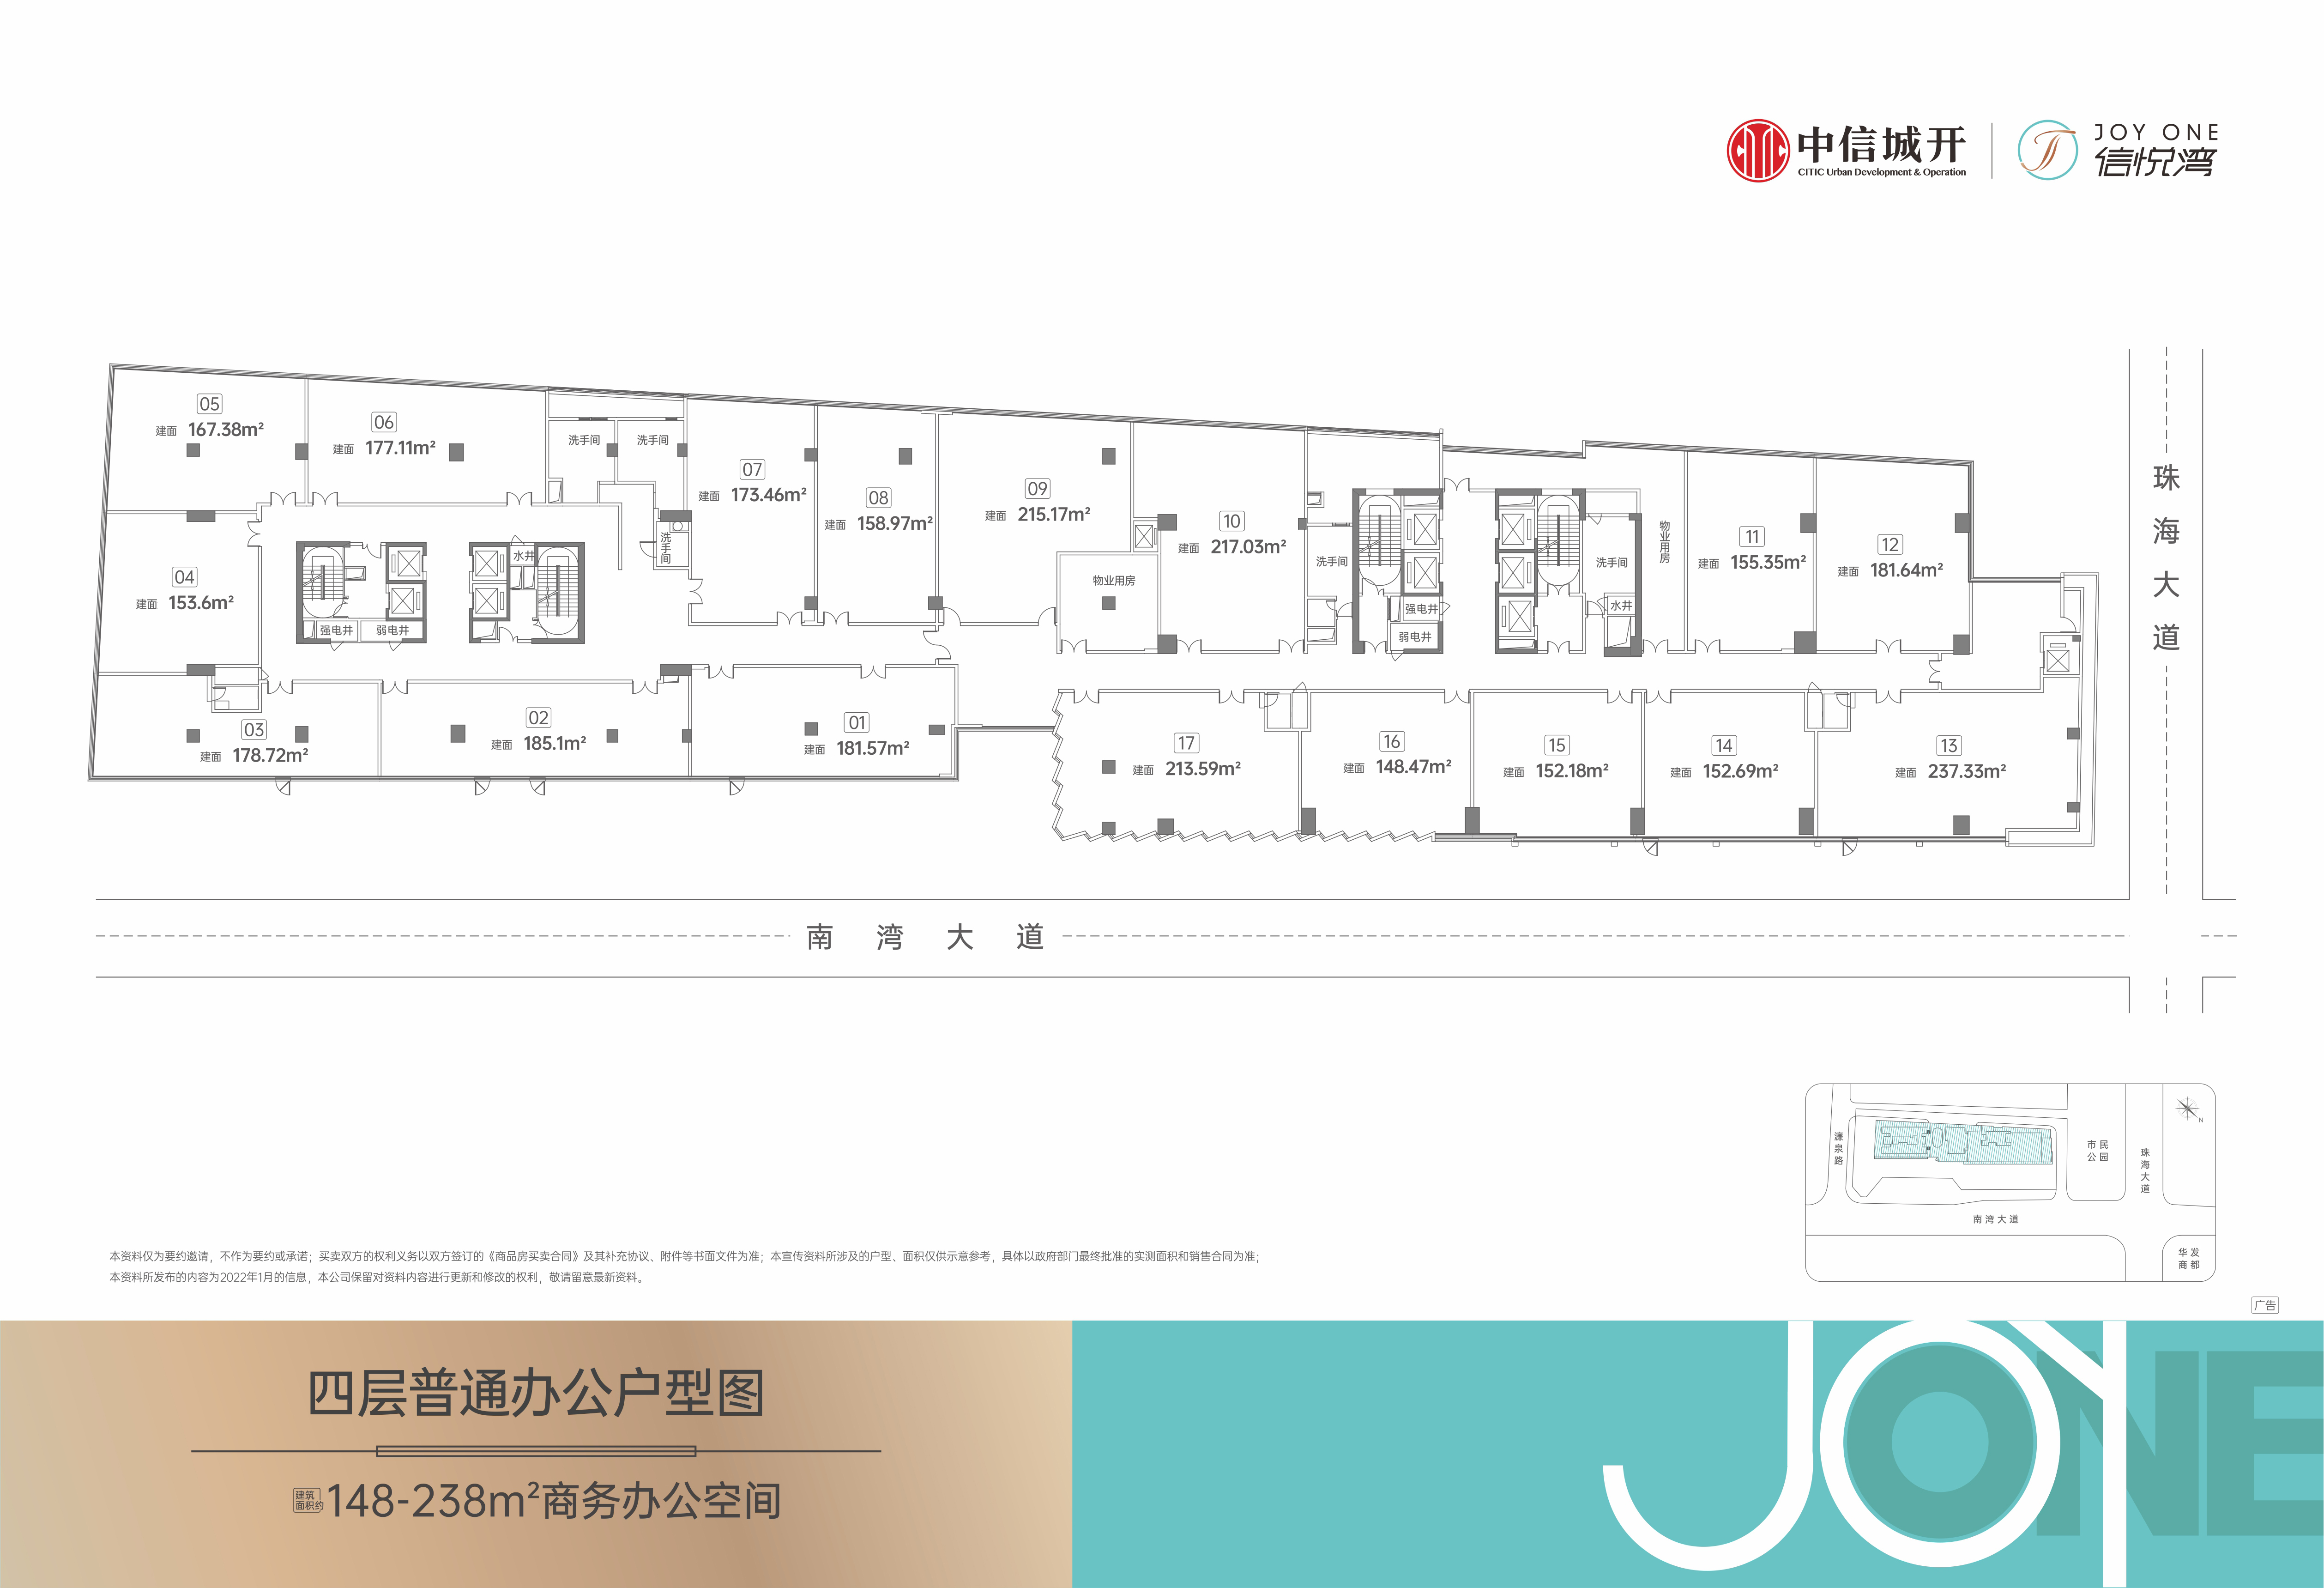 信悦湾大厦 商业办公 4层普通办公户型平面图